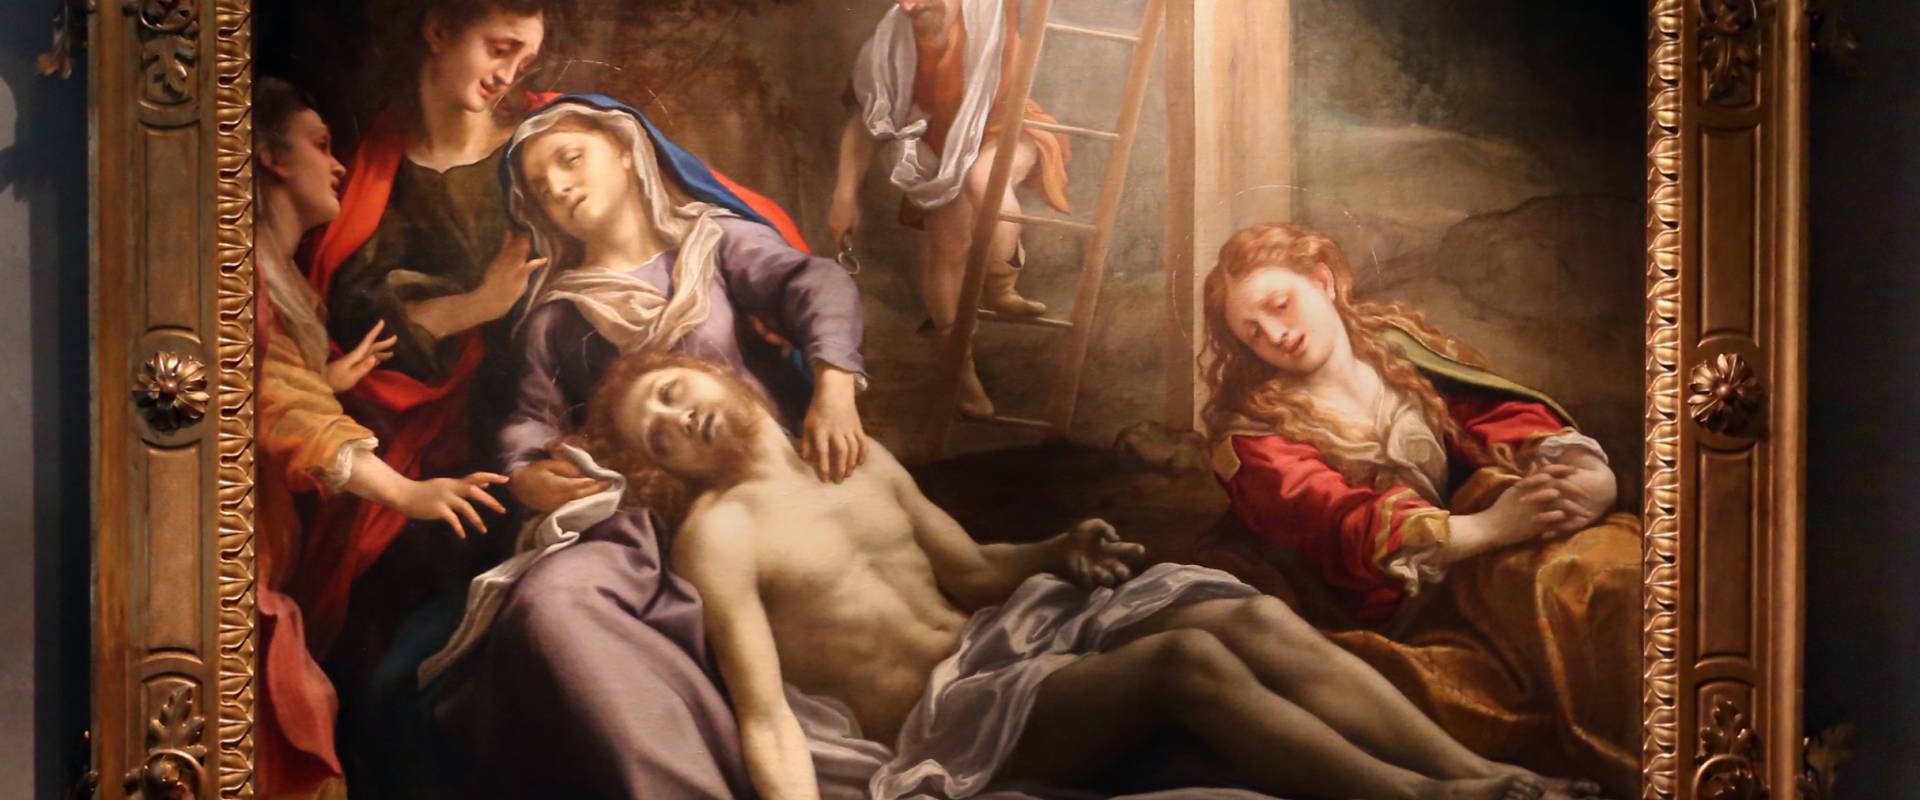 Correggio, compianto sul cristo morto, 1524 ca. 01 foto di Sailko